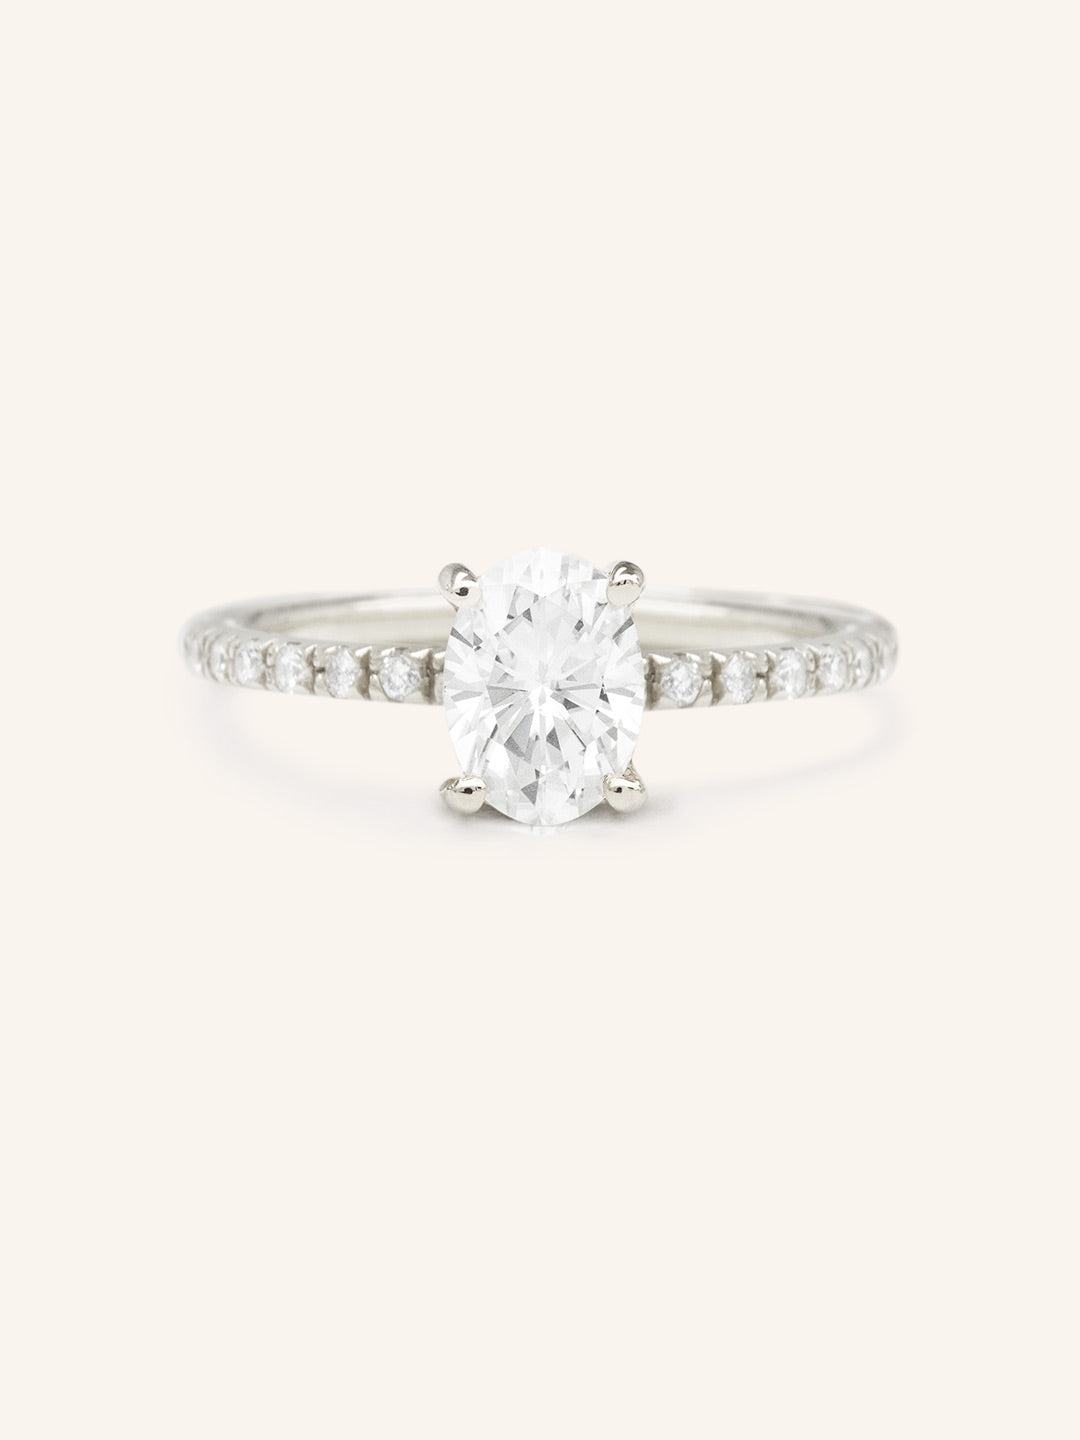 Moonlight Sky Oval Moissanite Diamond Half Eternity Engagement Ring